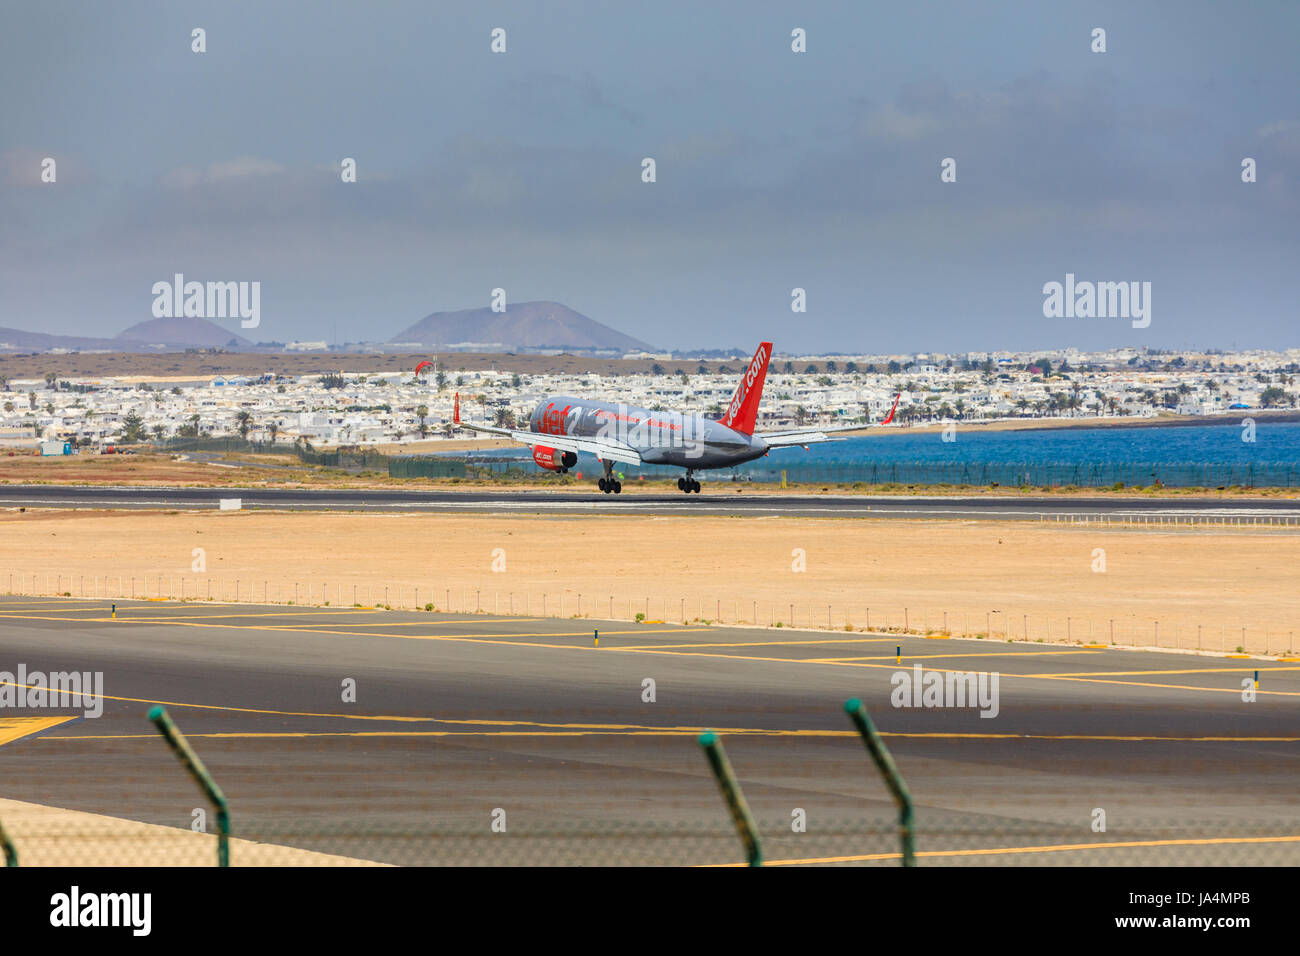 ARECIFE, Spagna - Aprile 15 2017: Boeing 757 - 200 del JET2 con registrazione G-LSAB in atterraggio a Lanzarote Airport Foto Stock